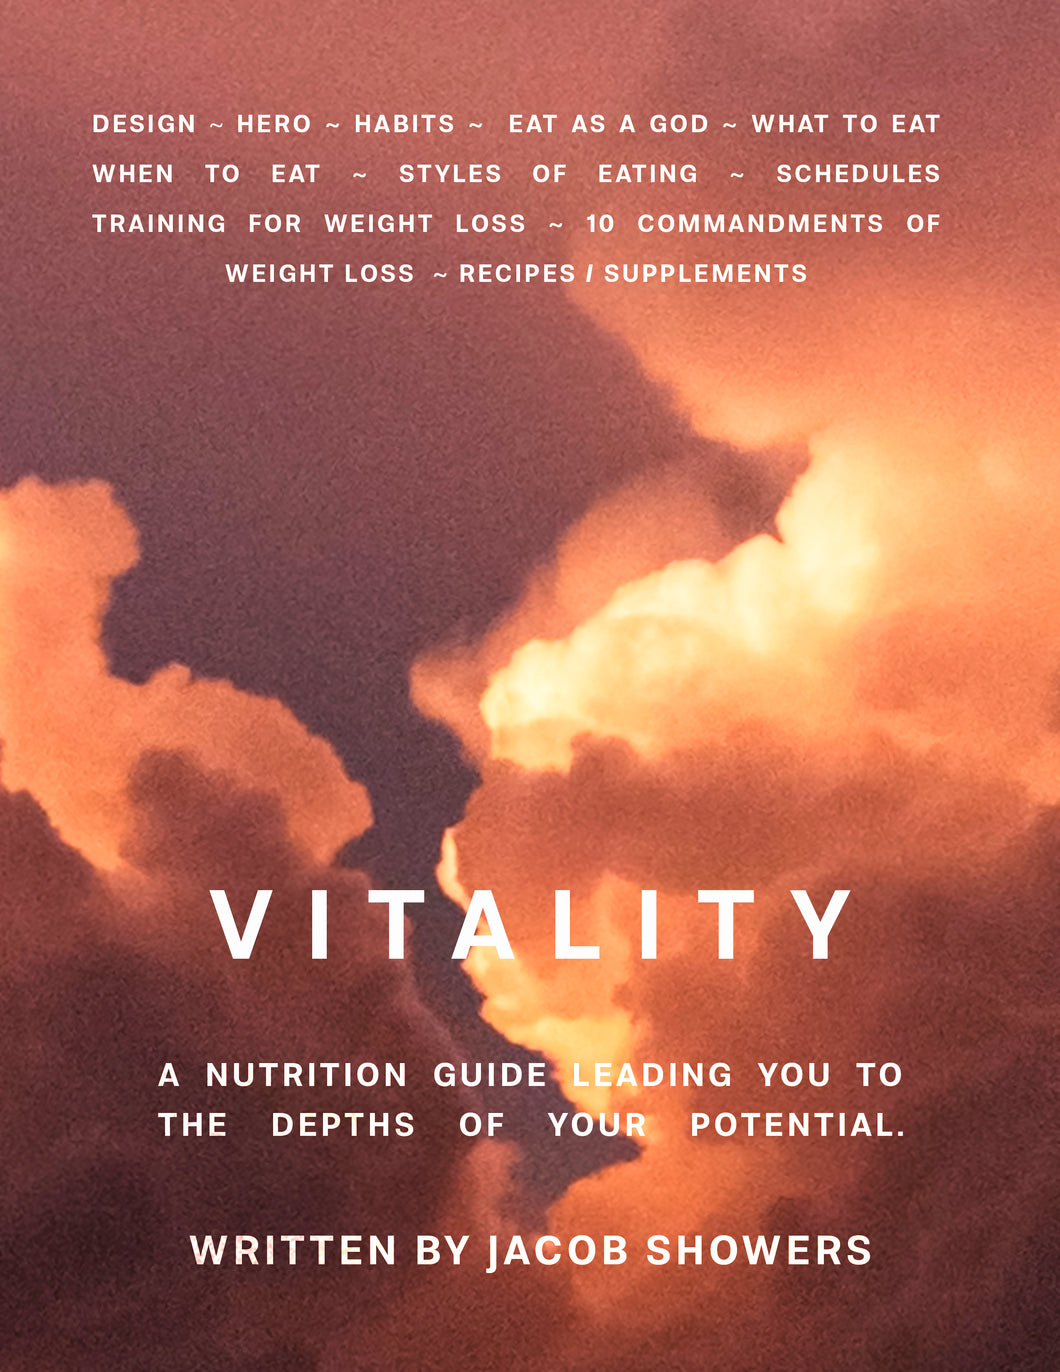 Vitality | Nutrition Guide & Recipe Book